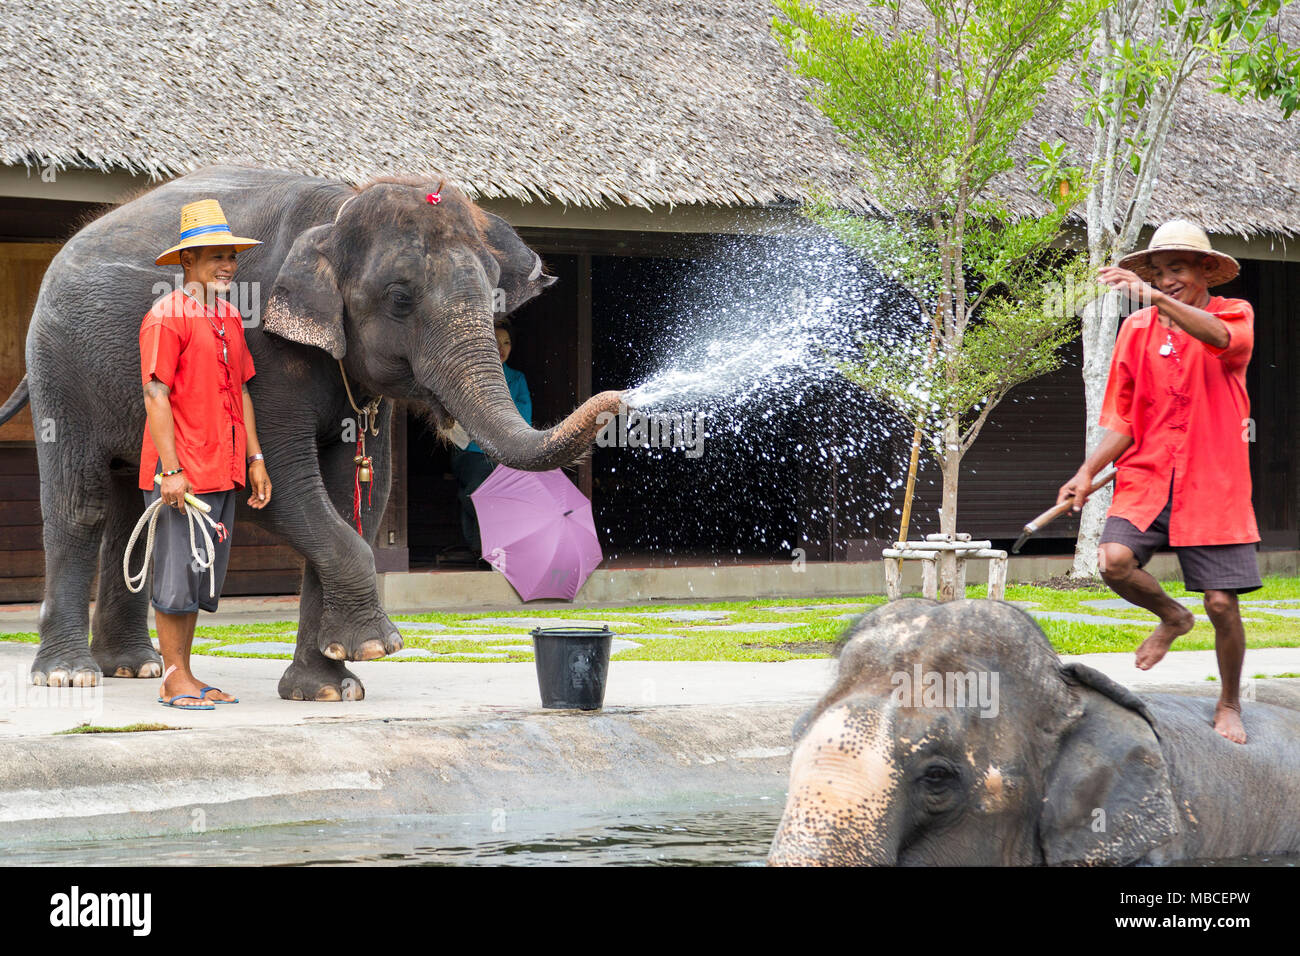 Elephant show at Rose Garden, Nakhon Pathom, Bangkok Stock Photo